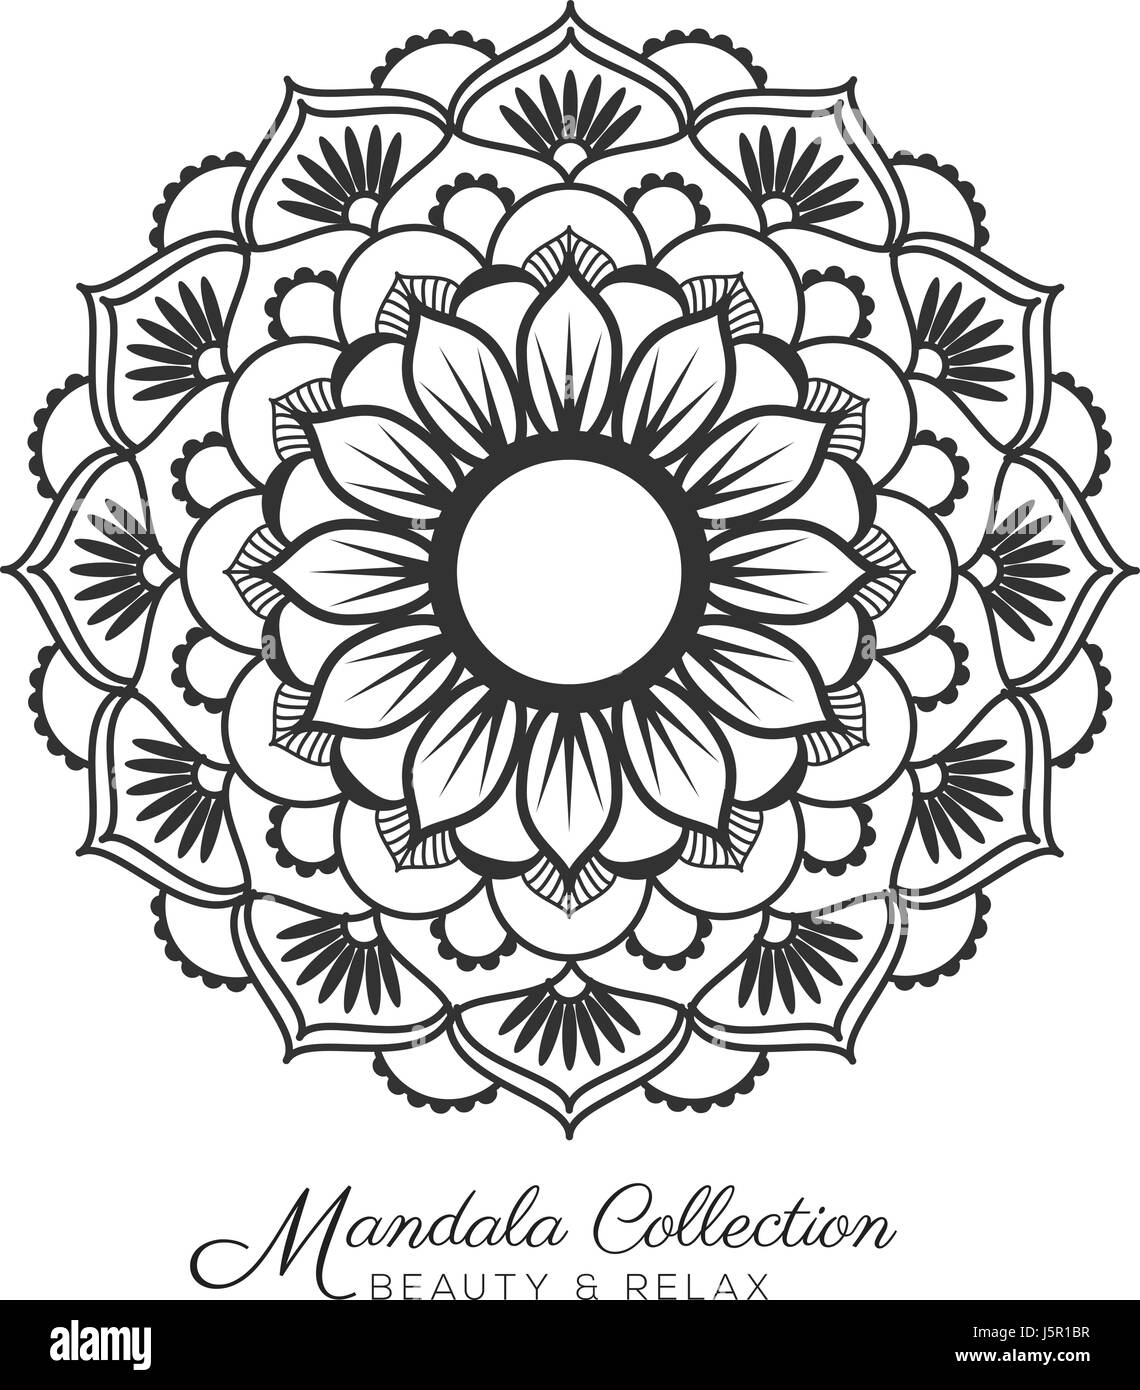 Mandala tibétain ornement décoratif design pour colorier, cartes de vœux, d'invitation, tatouage, symbole de yoga et de spa. Vector illustration Illustration de Vecteur